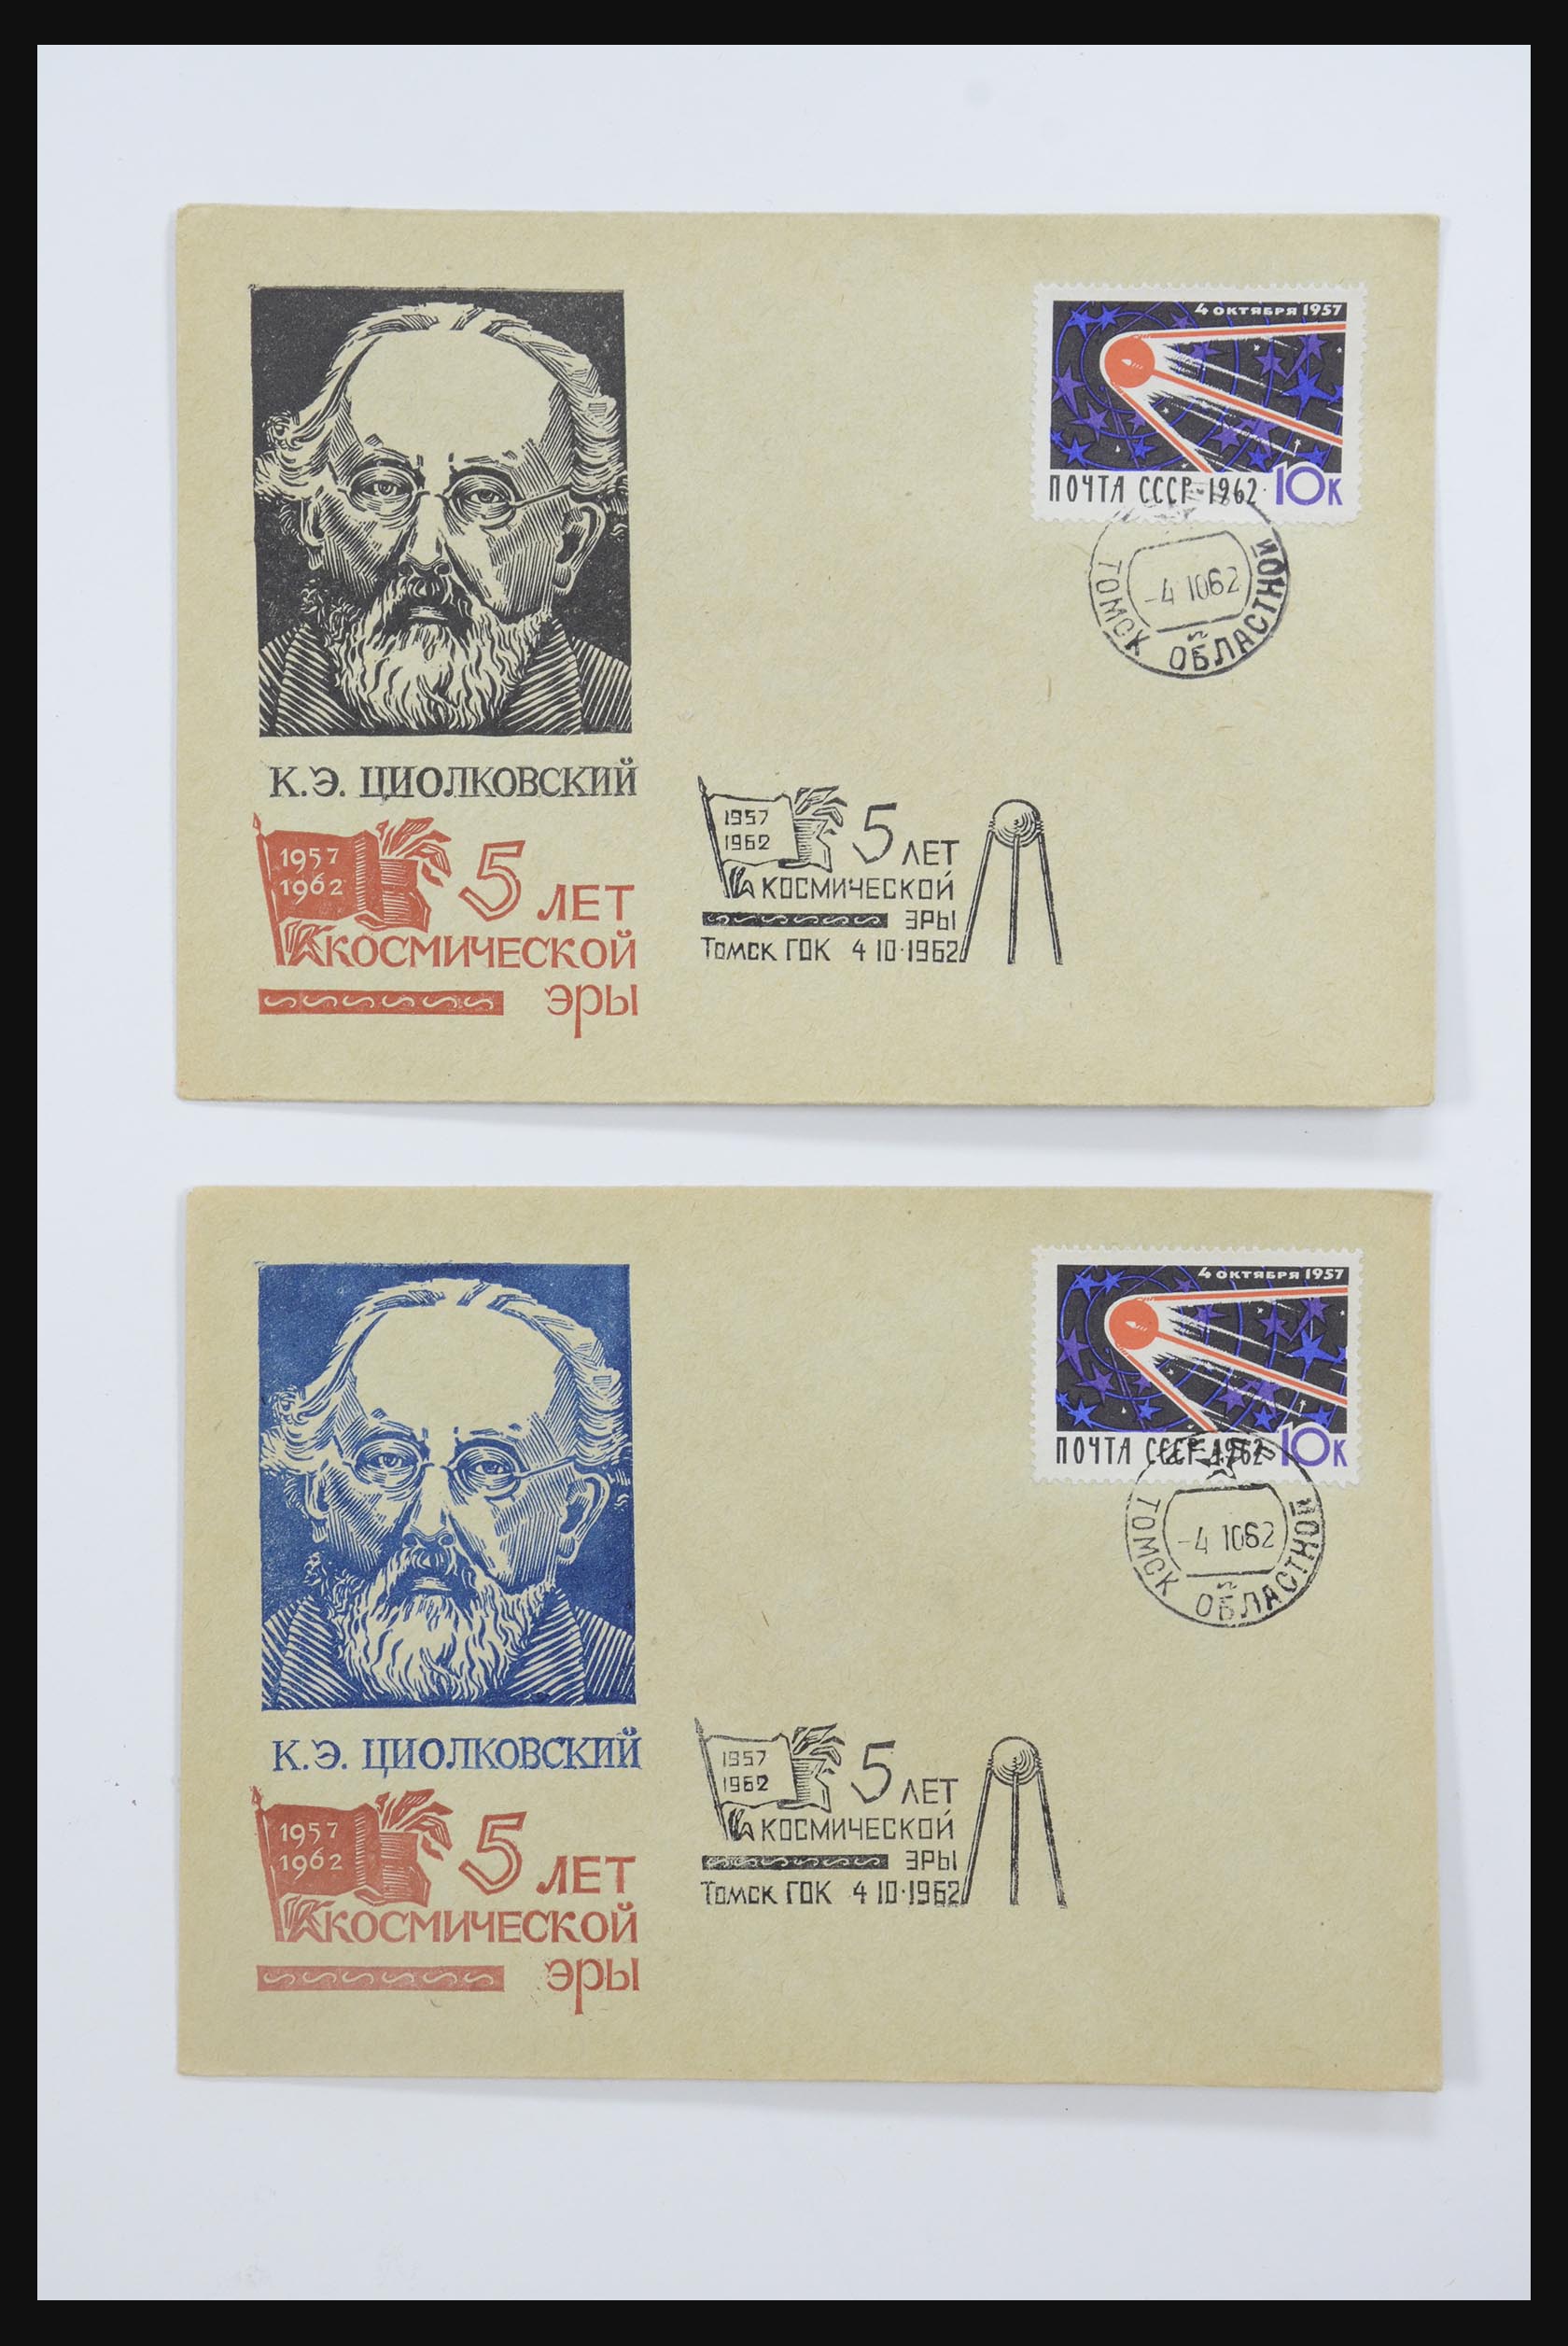 31605 0060 - 31605 Rusland postwaardestukken jaren 50-60.